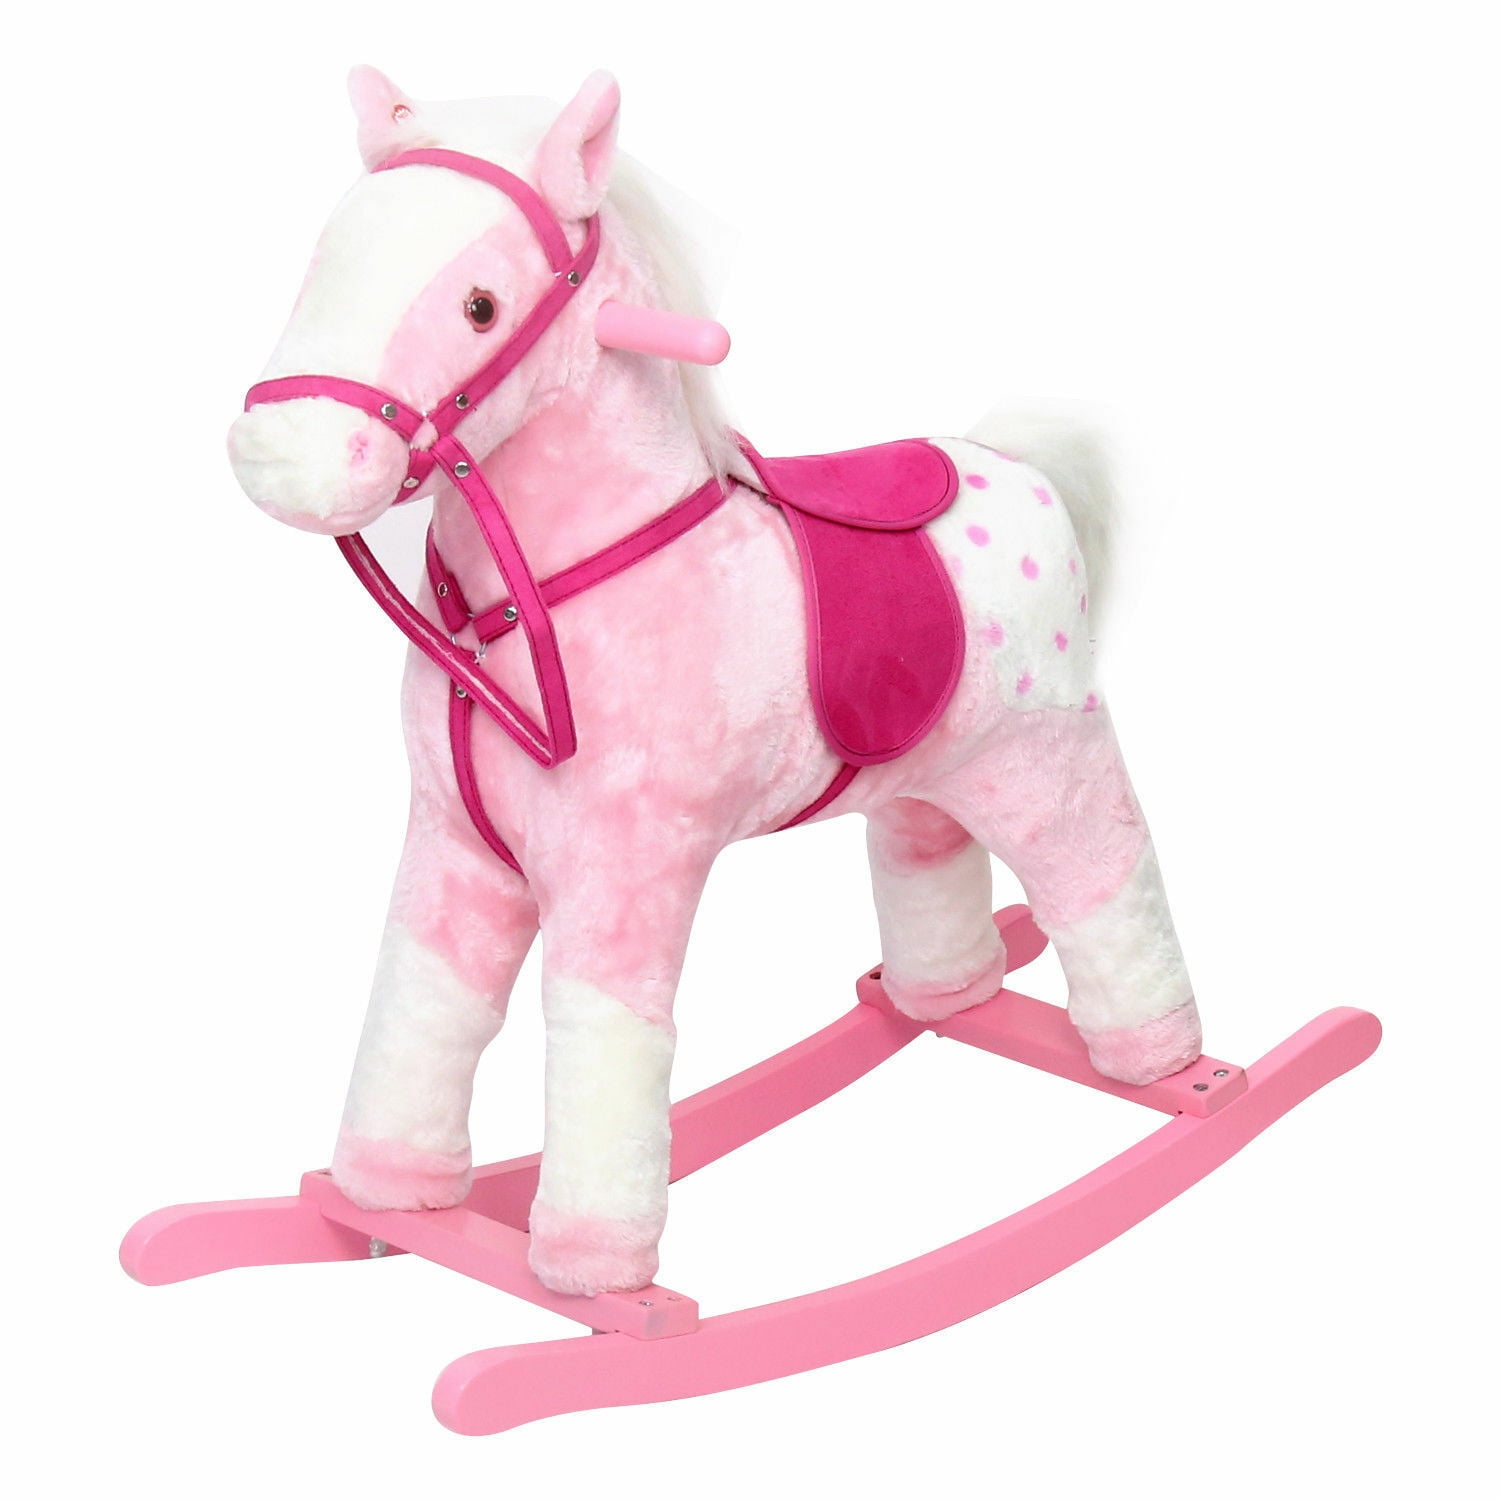 Kids Ride on Walking Horse Animal Rocking Toy Neigh Sound Gift Pink 